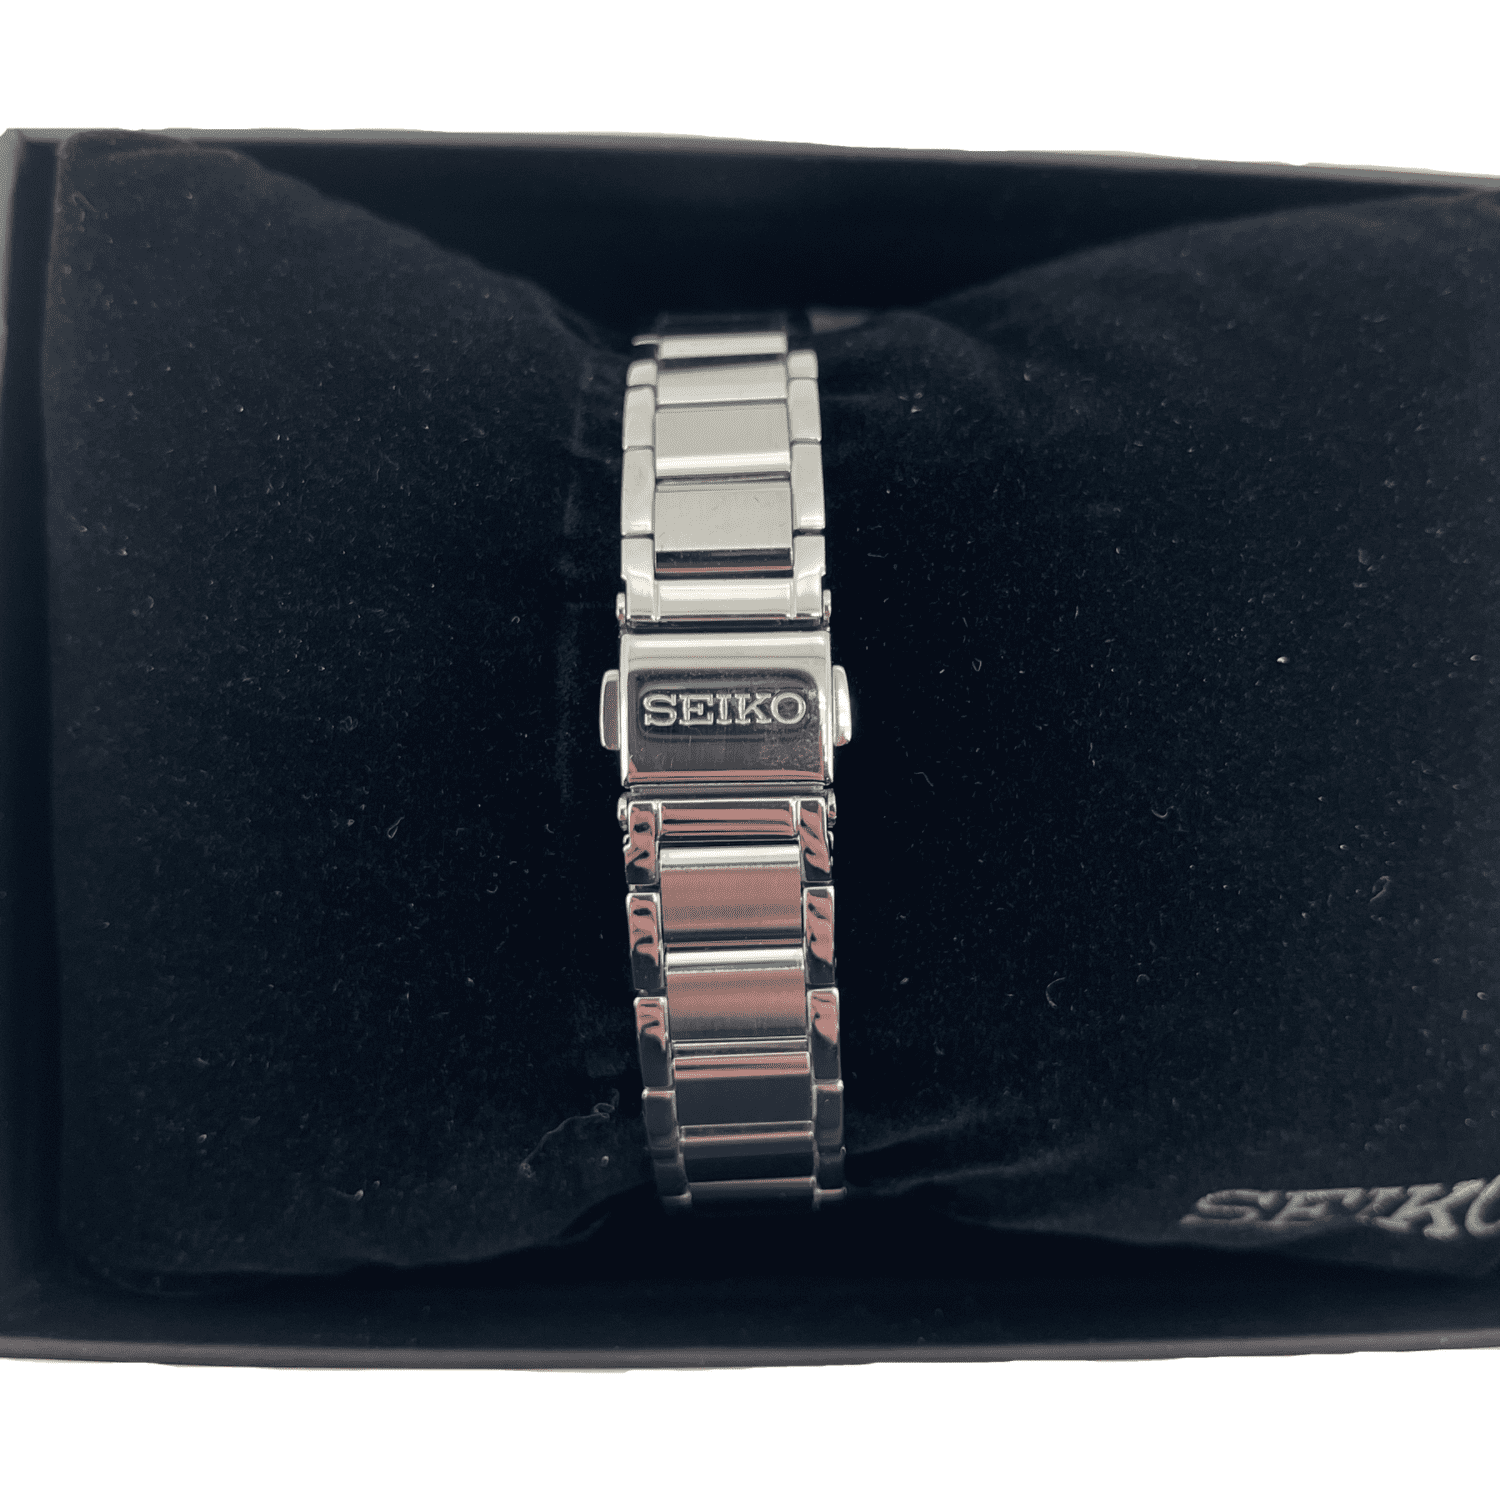 Seiko Women's Wrist Watch / Silver Watch / Analog Watch / SWR031P1